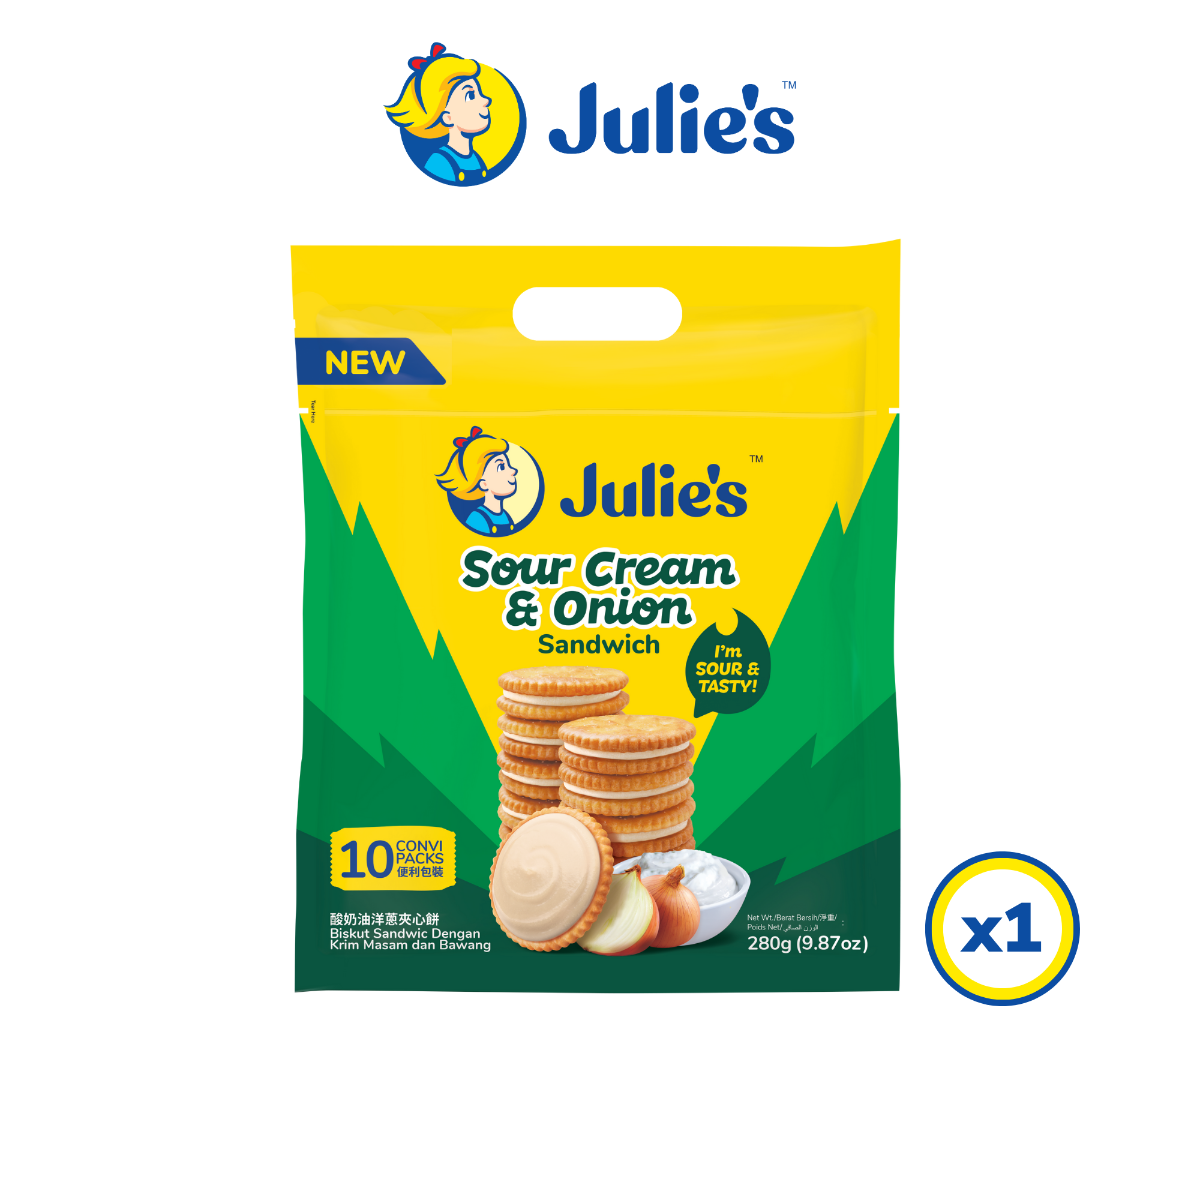 julie_s_sour_cream_onion_sandwich_280g_x_1_pack